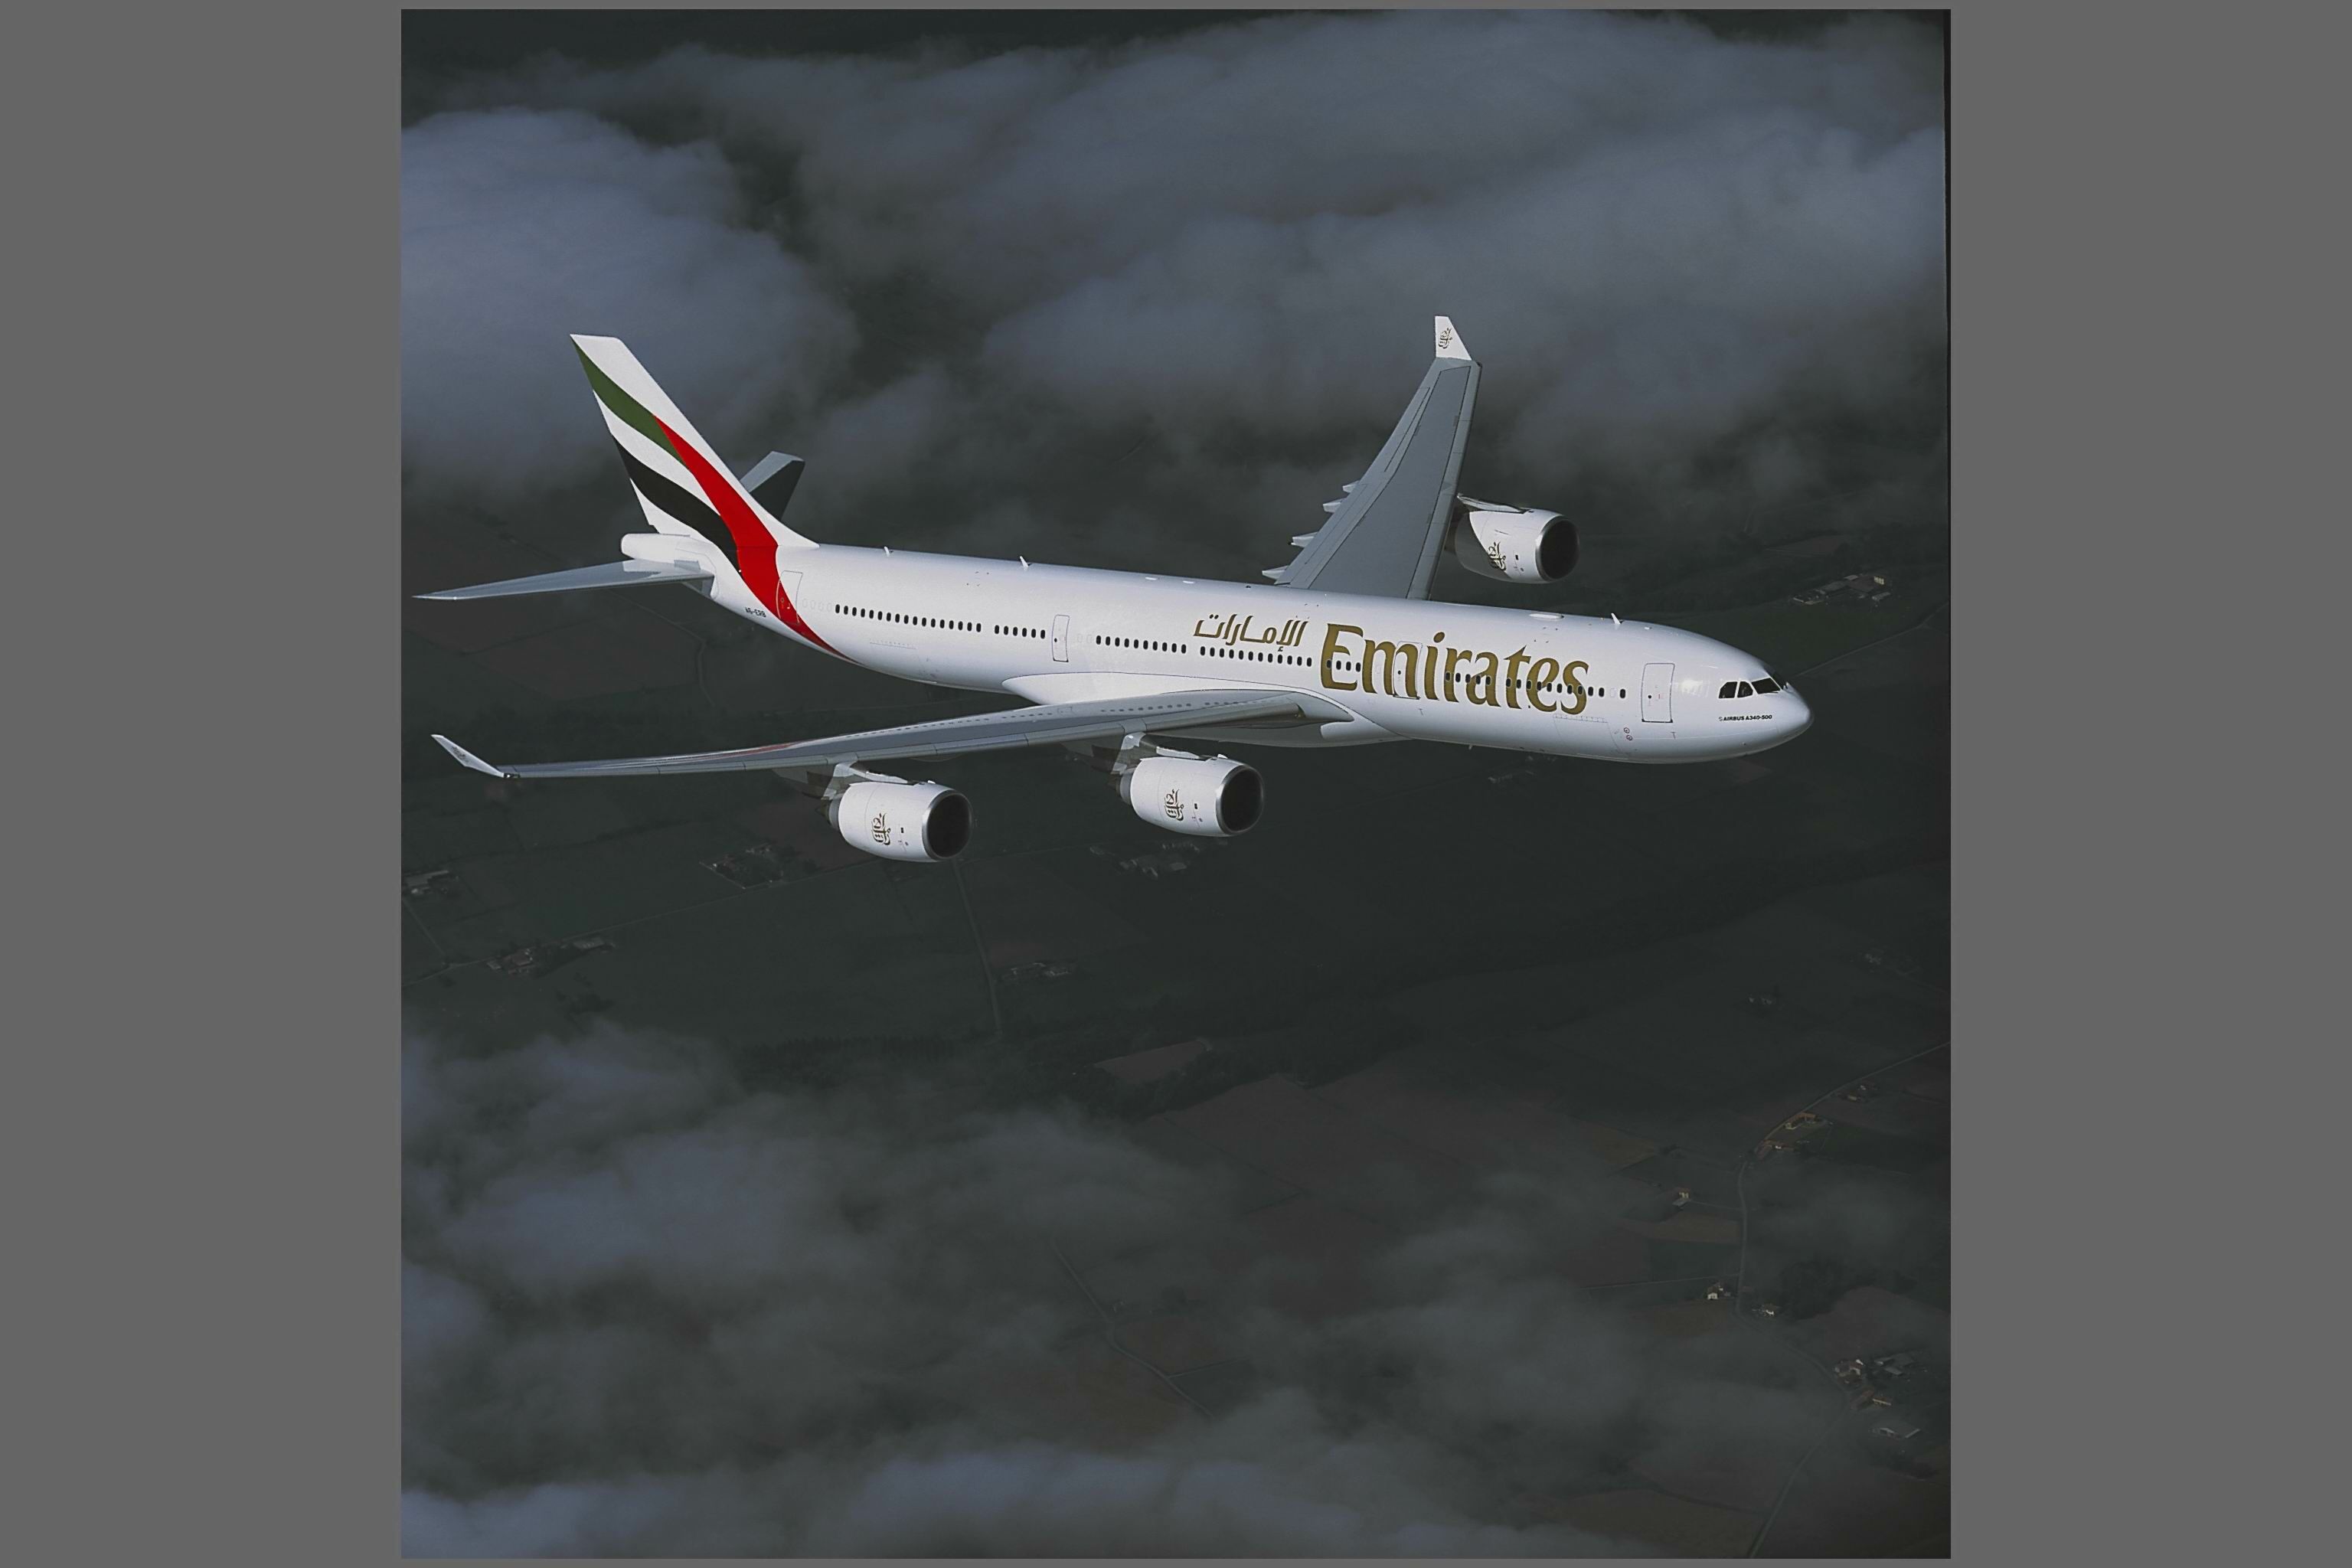 A Dubai con le tariffe promozionali di Emirates